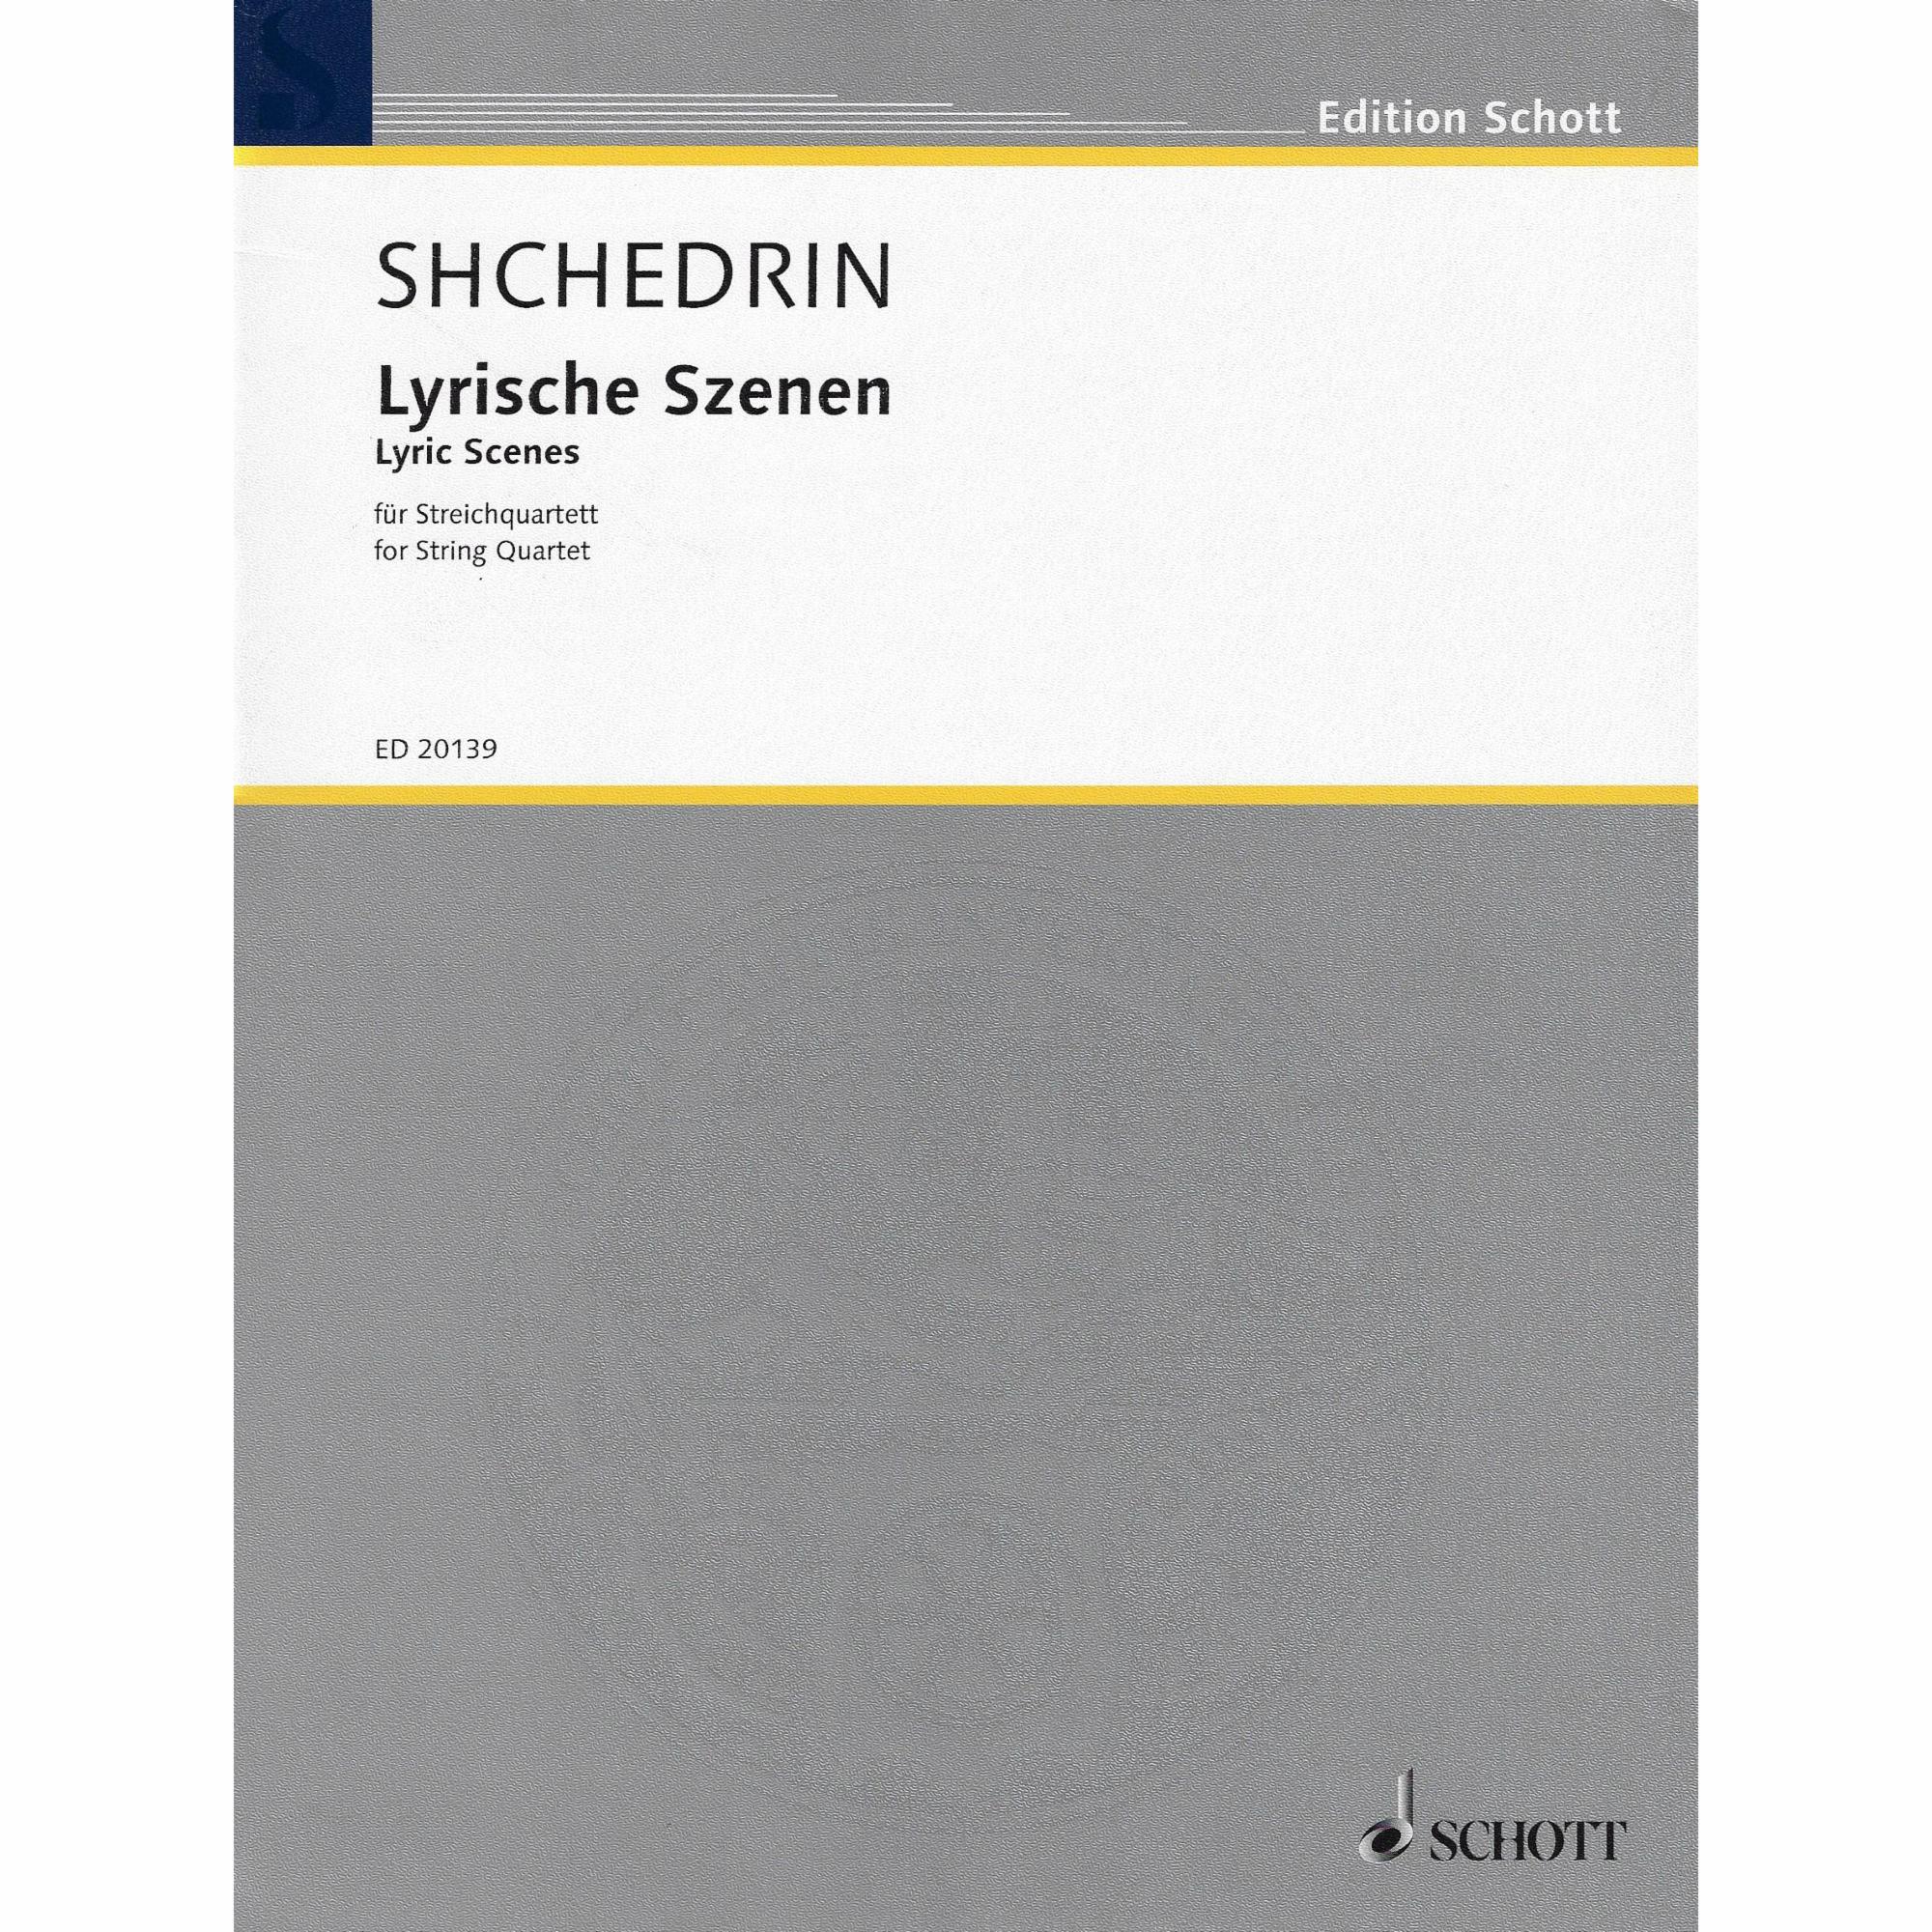 Shchedrin -- Lyric Scenes for String Quartet